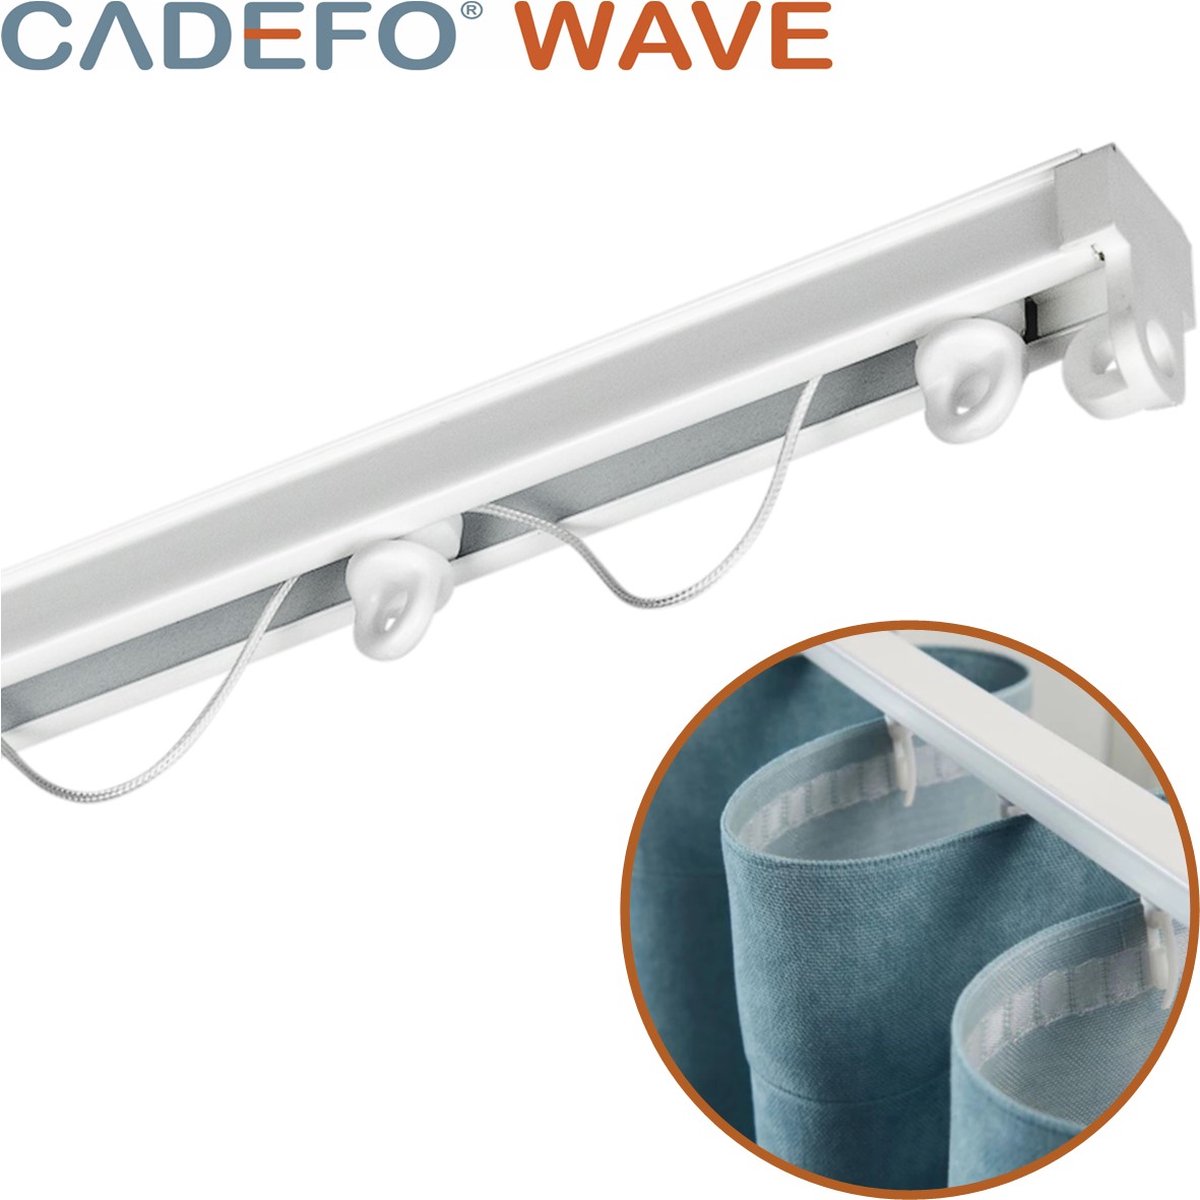 CADEFO WAVE (301 - 350 cm) Gordijnrails - Compleet op maat! - UIT 1 STUK - Leverbaar tot 6 meter - Plafondbevestiging - Lengte 330 cm